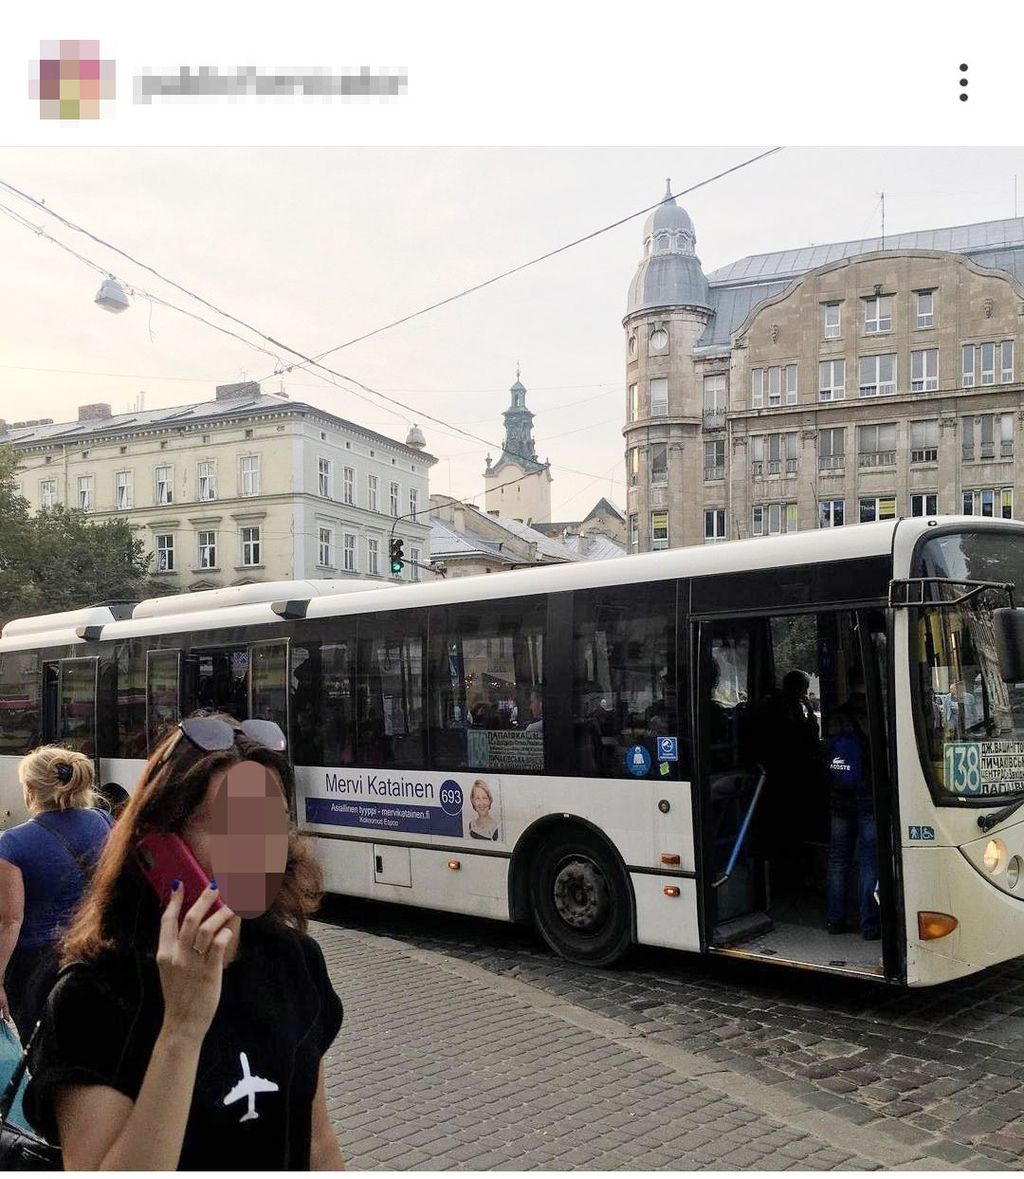 Ukrainassa ajaa bussi, jonka kyljessä on Mervi Kataisen vaalimainos – ”Kampanja on mennyt alueellisesti leveäksi”